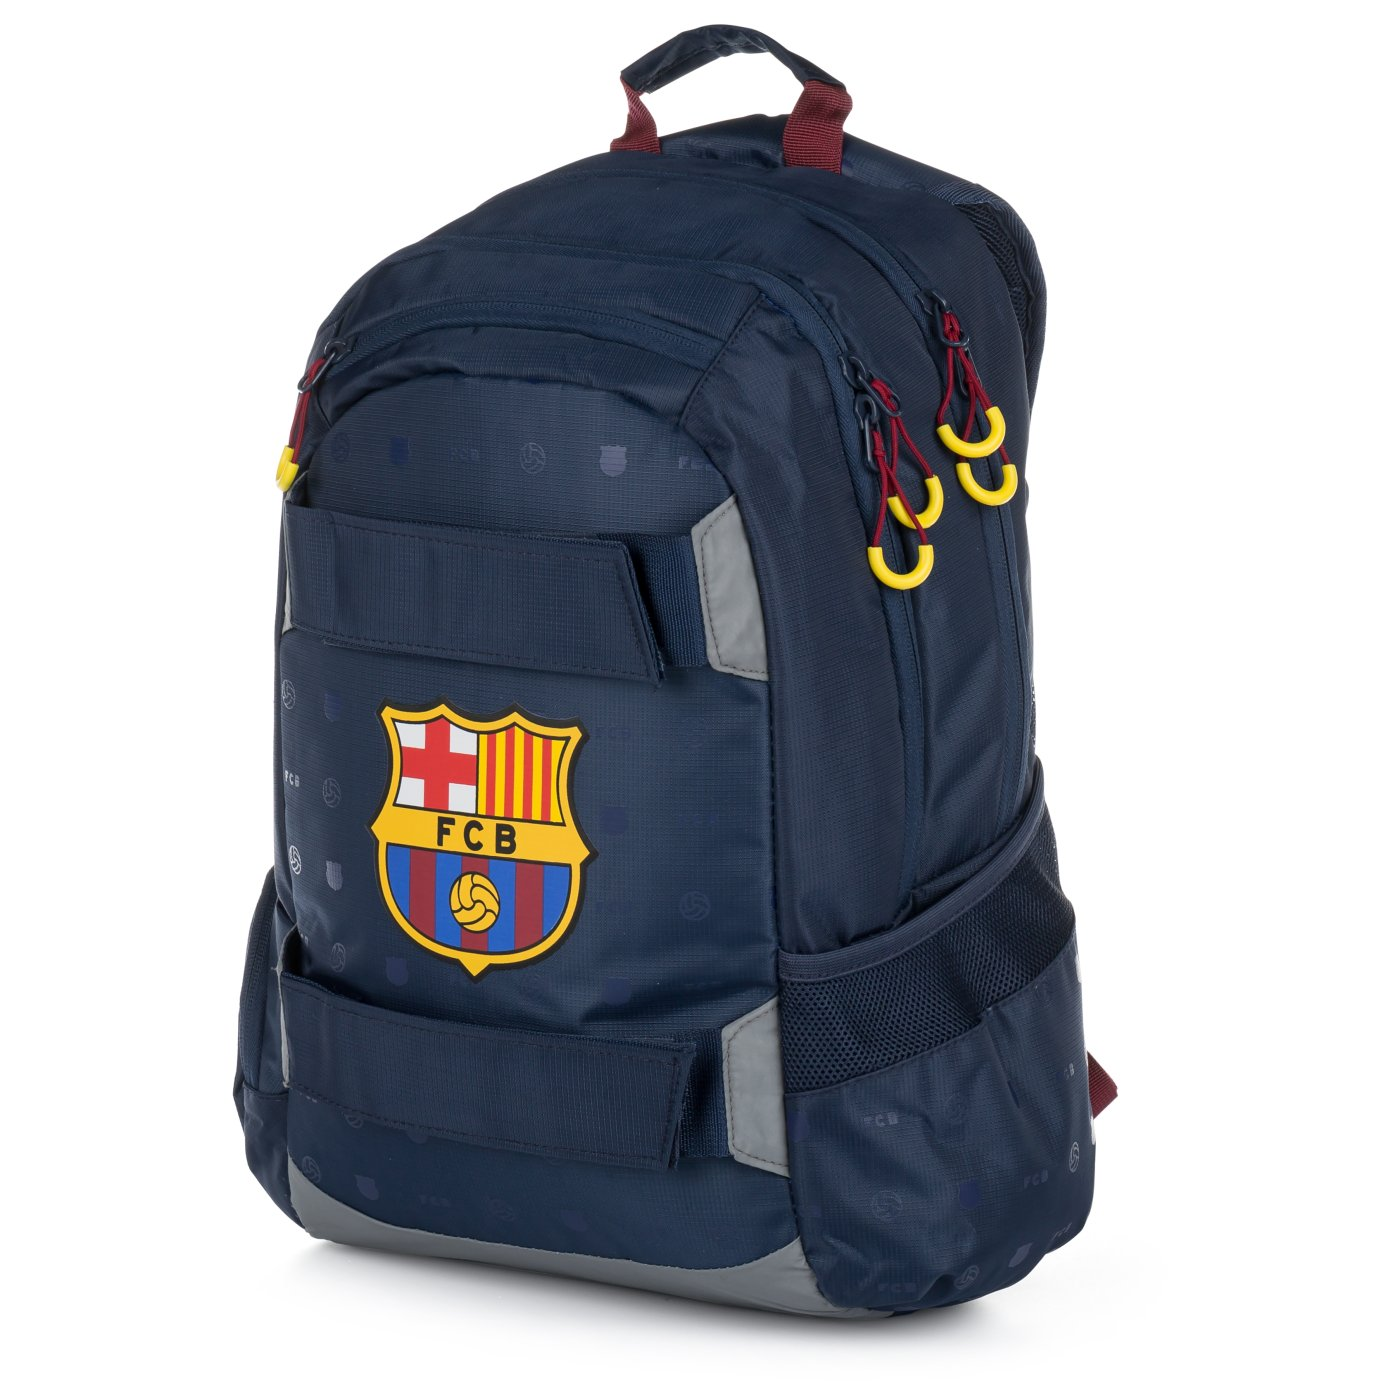 Student backpack FC Barcelona - Školní zboží » OXY batohy a doplňky ...